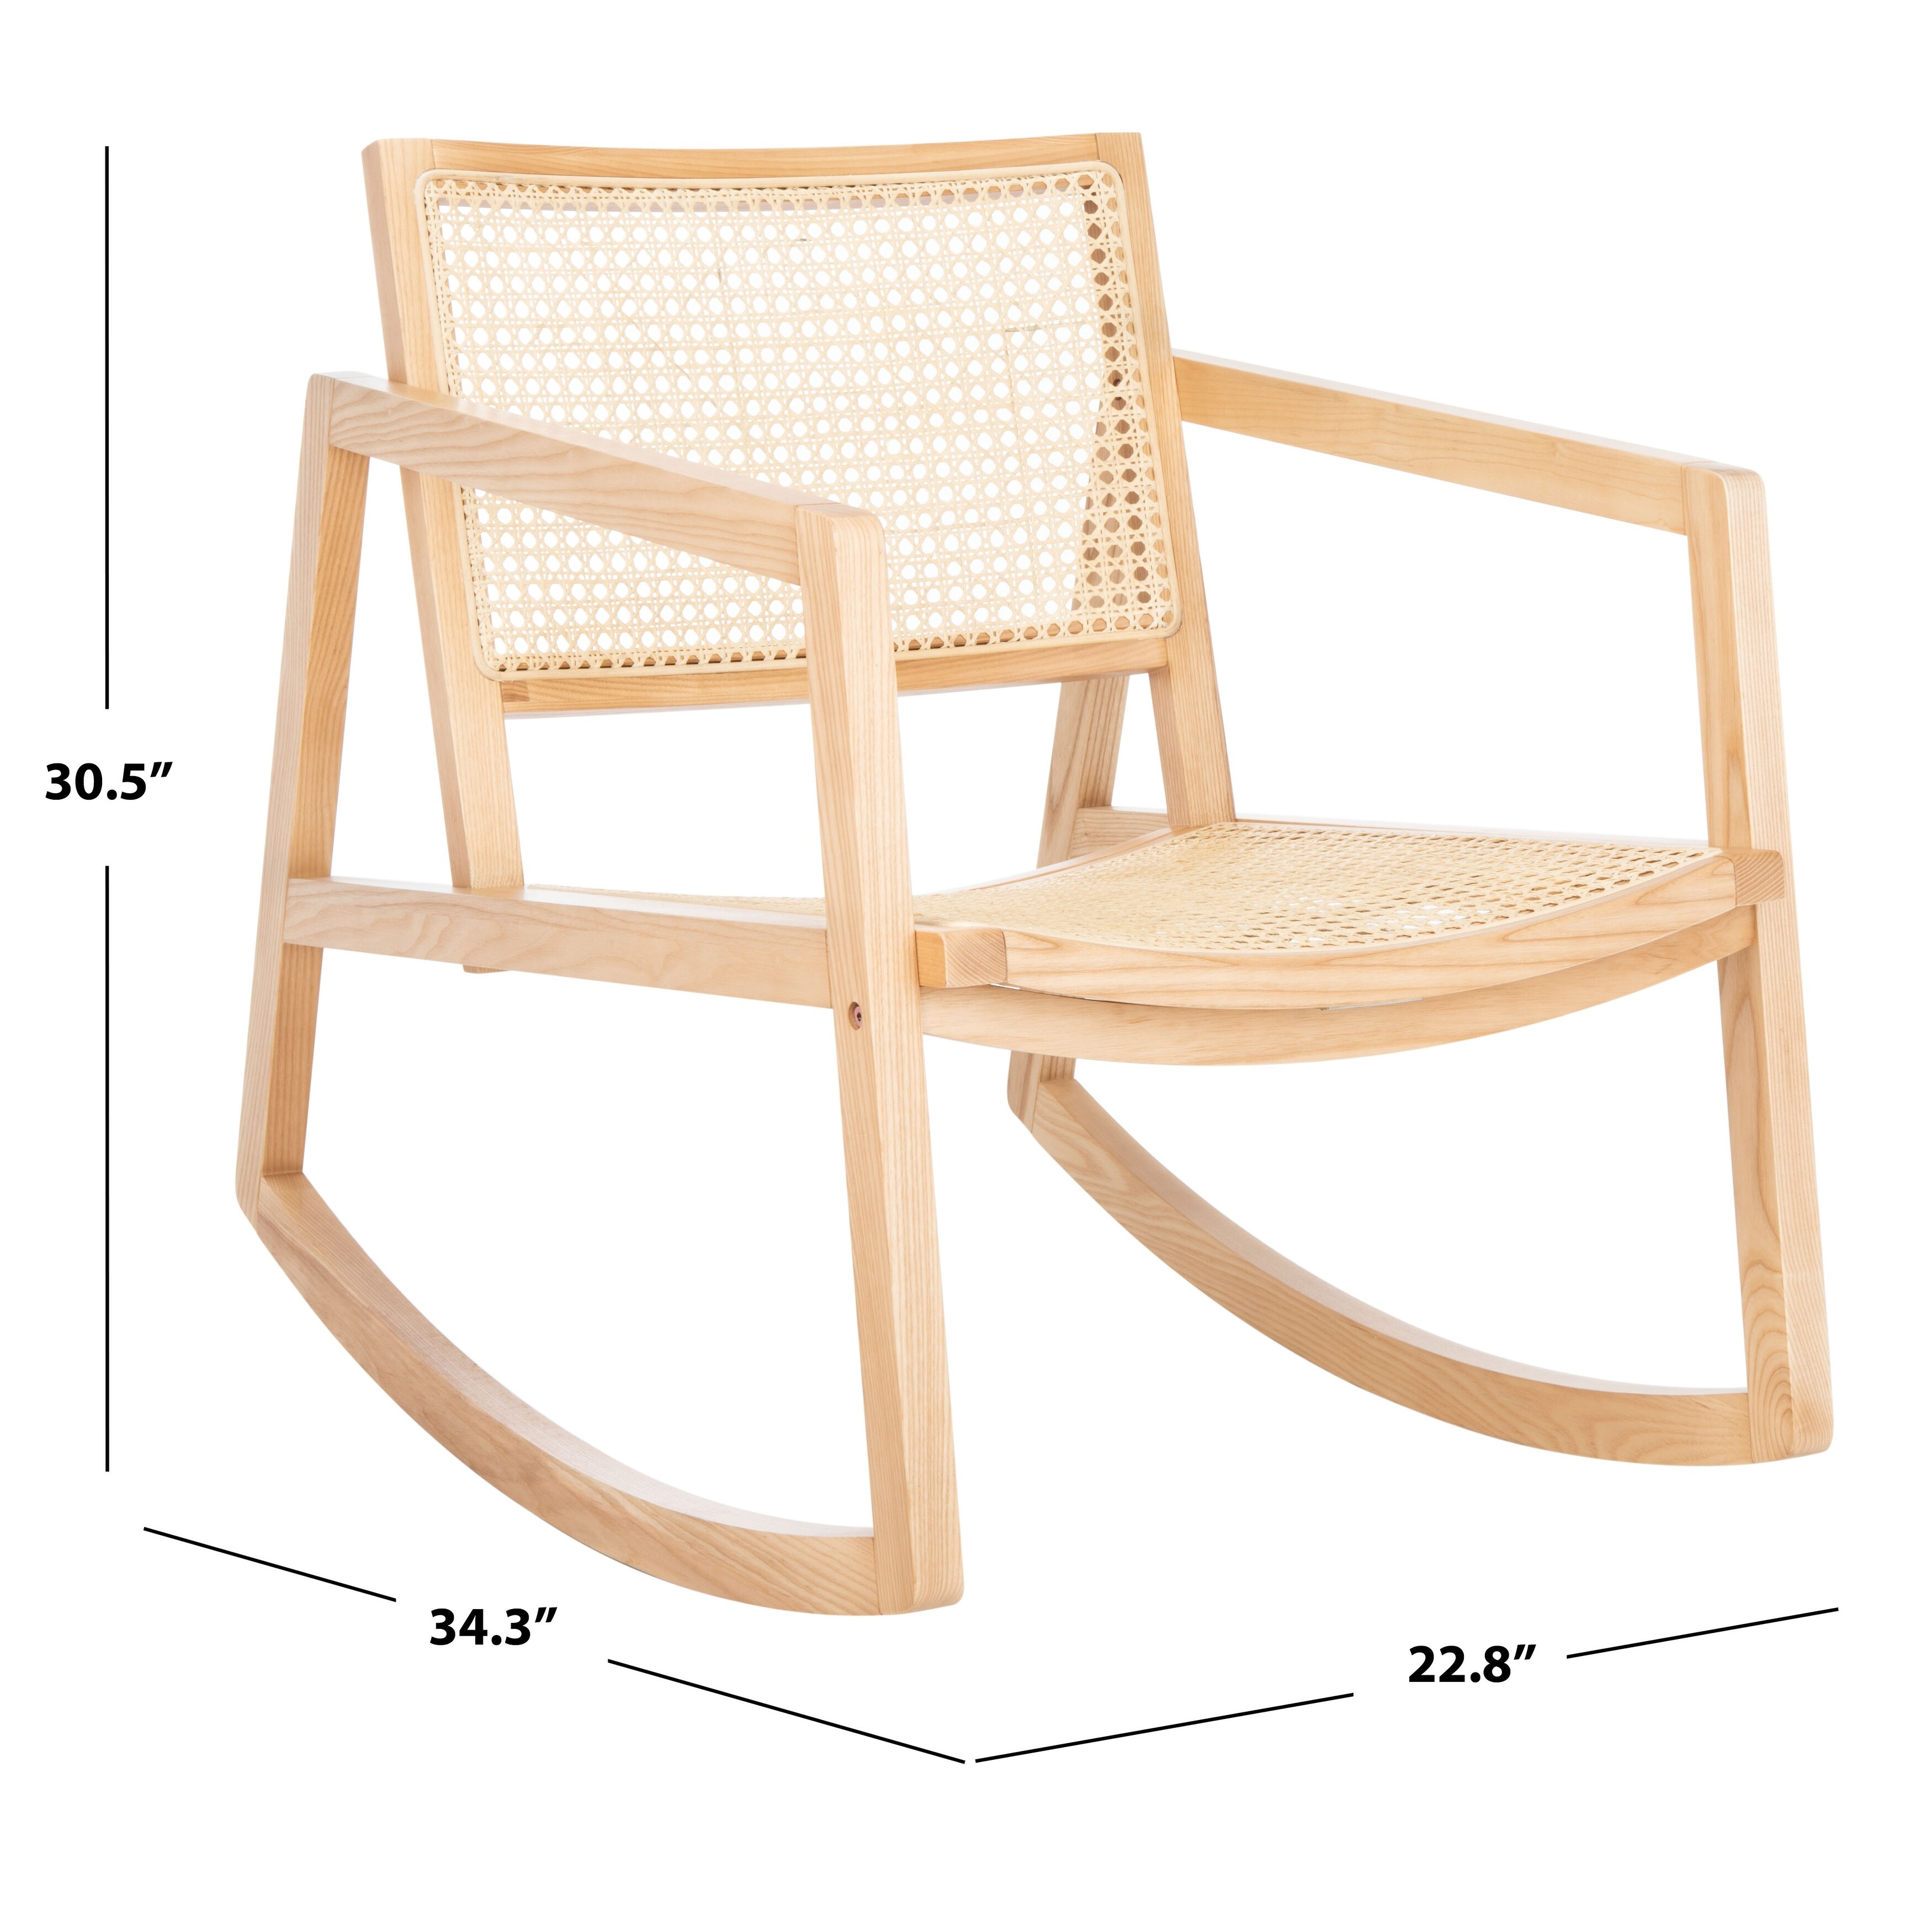 SAFAVIEH Couture Perth Rattan Rocking Chair - 22.8"x34.3"x30.5"